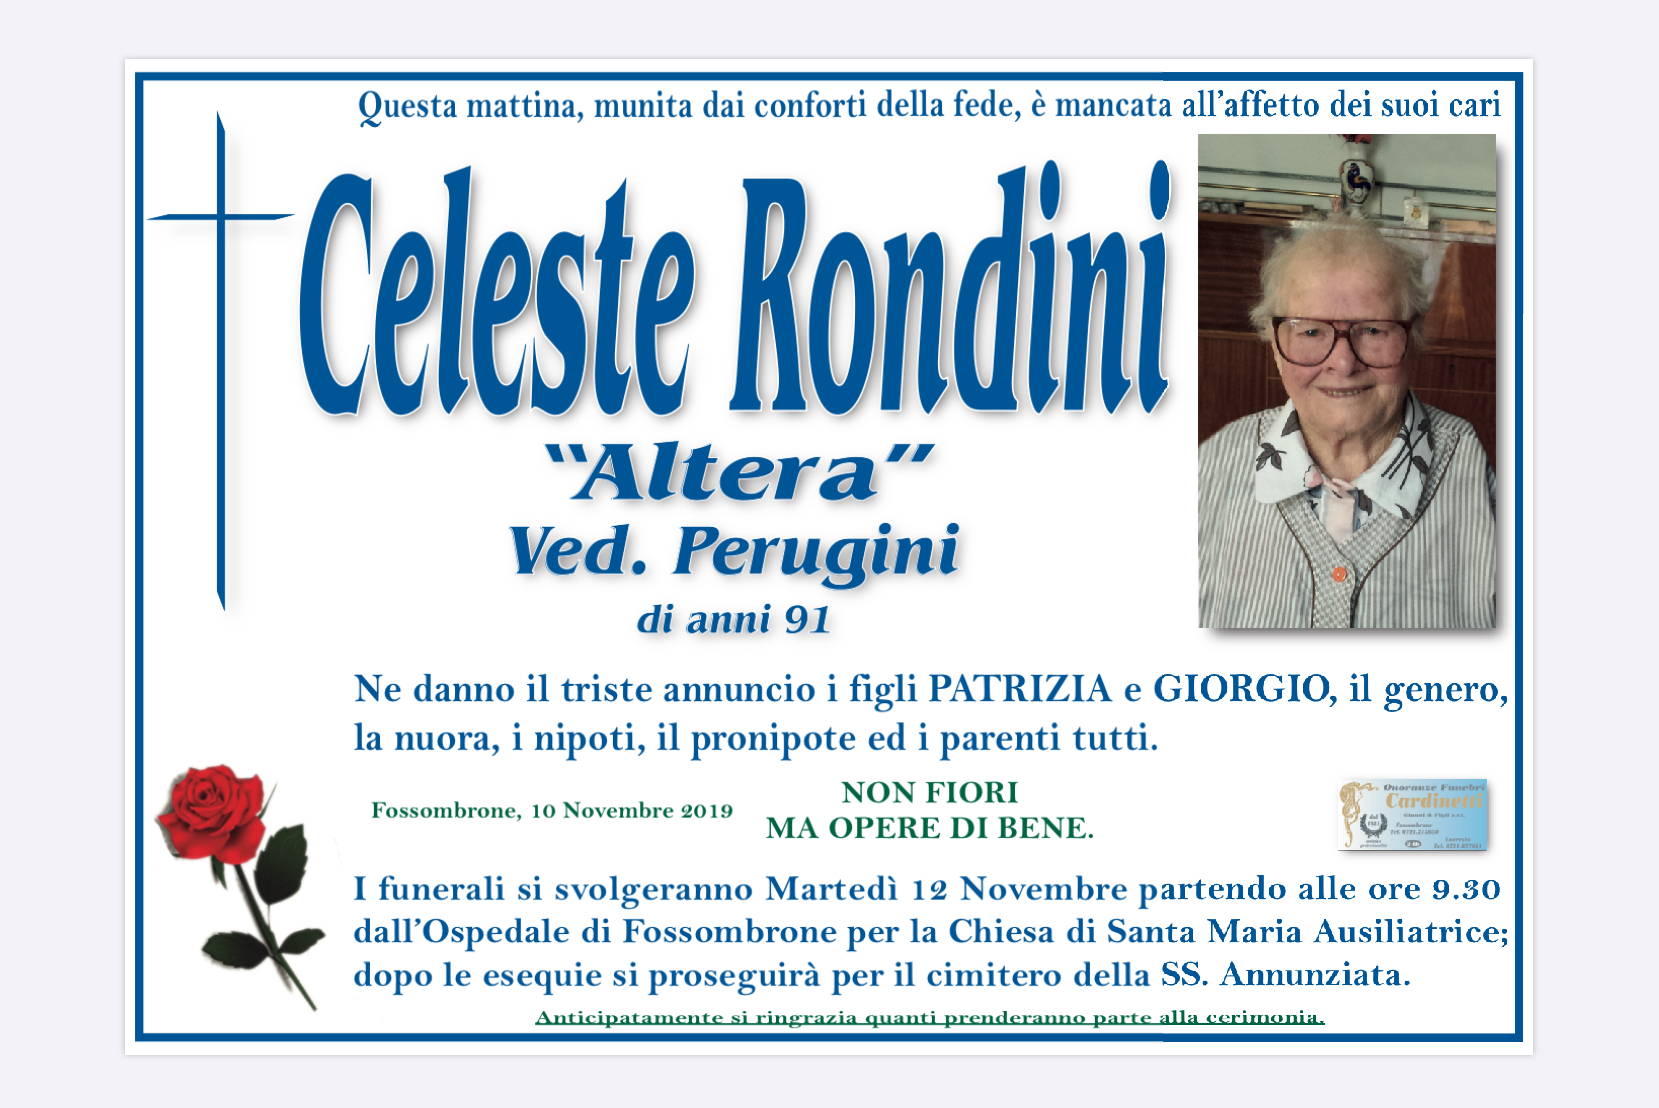 Celeste Rondini